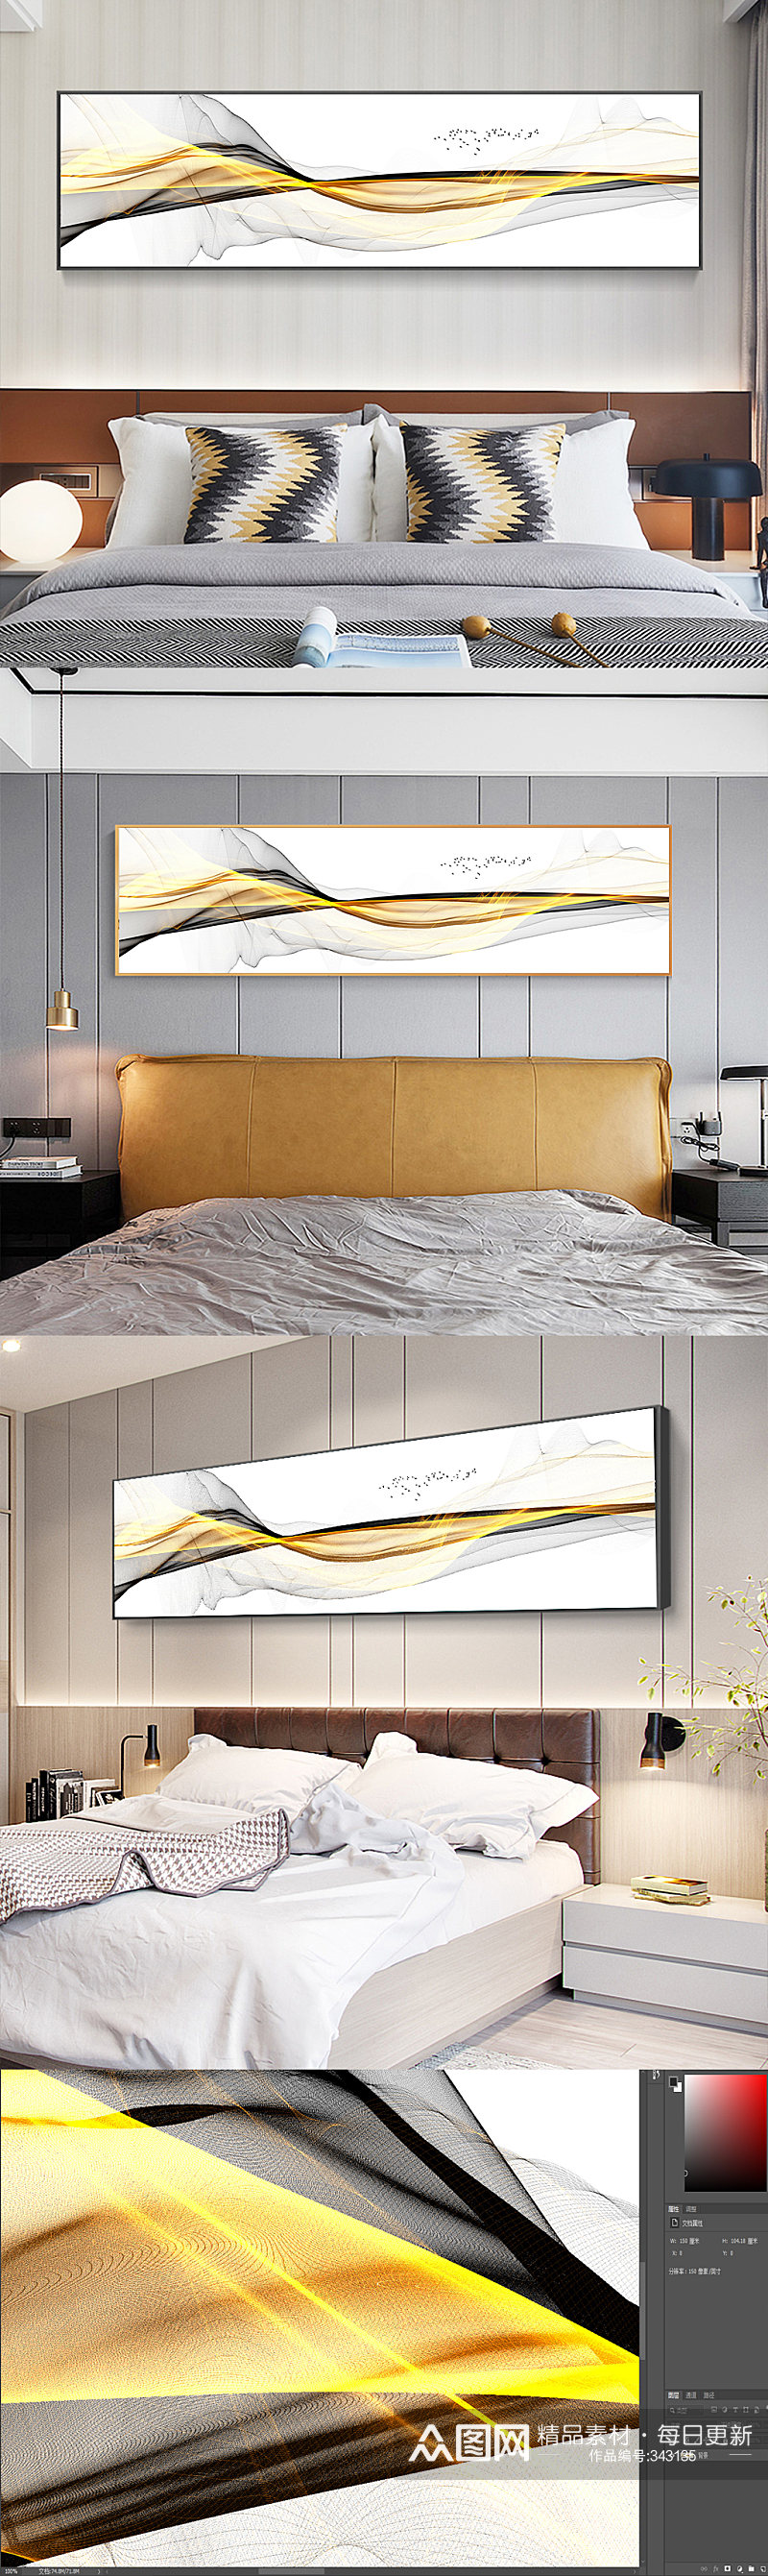 现代简约线条床头装饰画素材